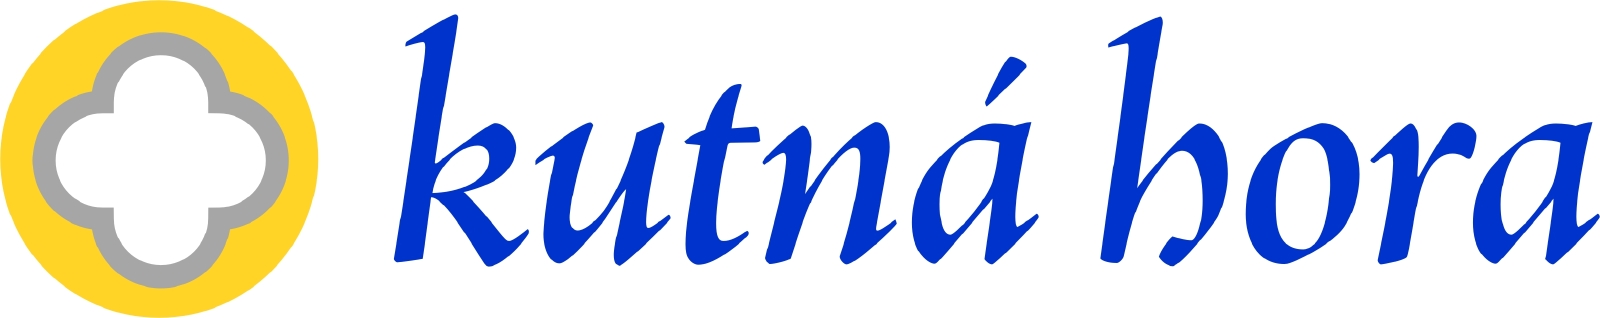 Kutna_Hora_logo-var1-color.jpg